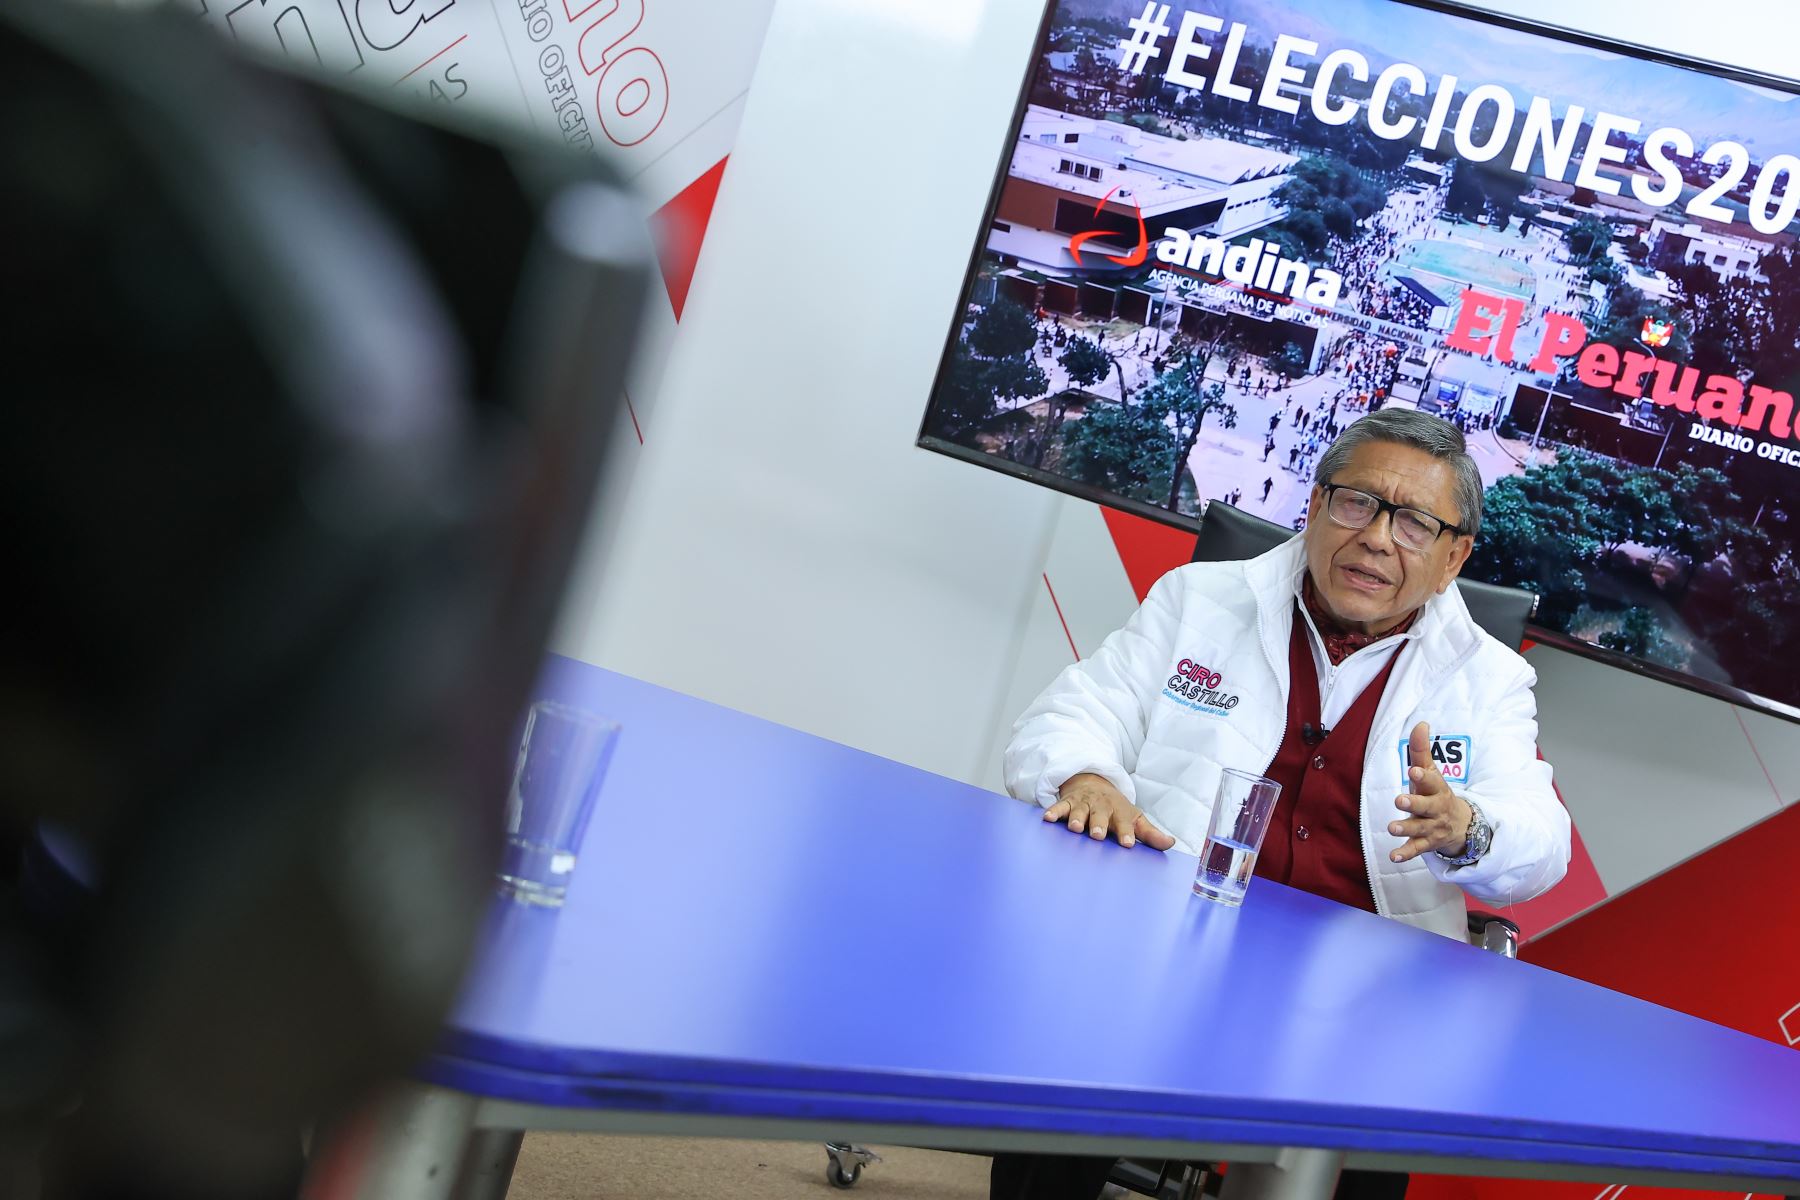 Entrevista a Ciro Castillo Rojo Salas, candidato al Gobierno Regional del Callao por el Movimiento Regional Más Callao. La entrevista se transmite por Andina Canal Online.
Foto: ANDINA/Andrés Valle